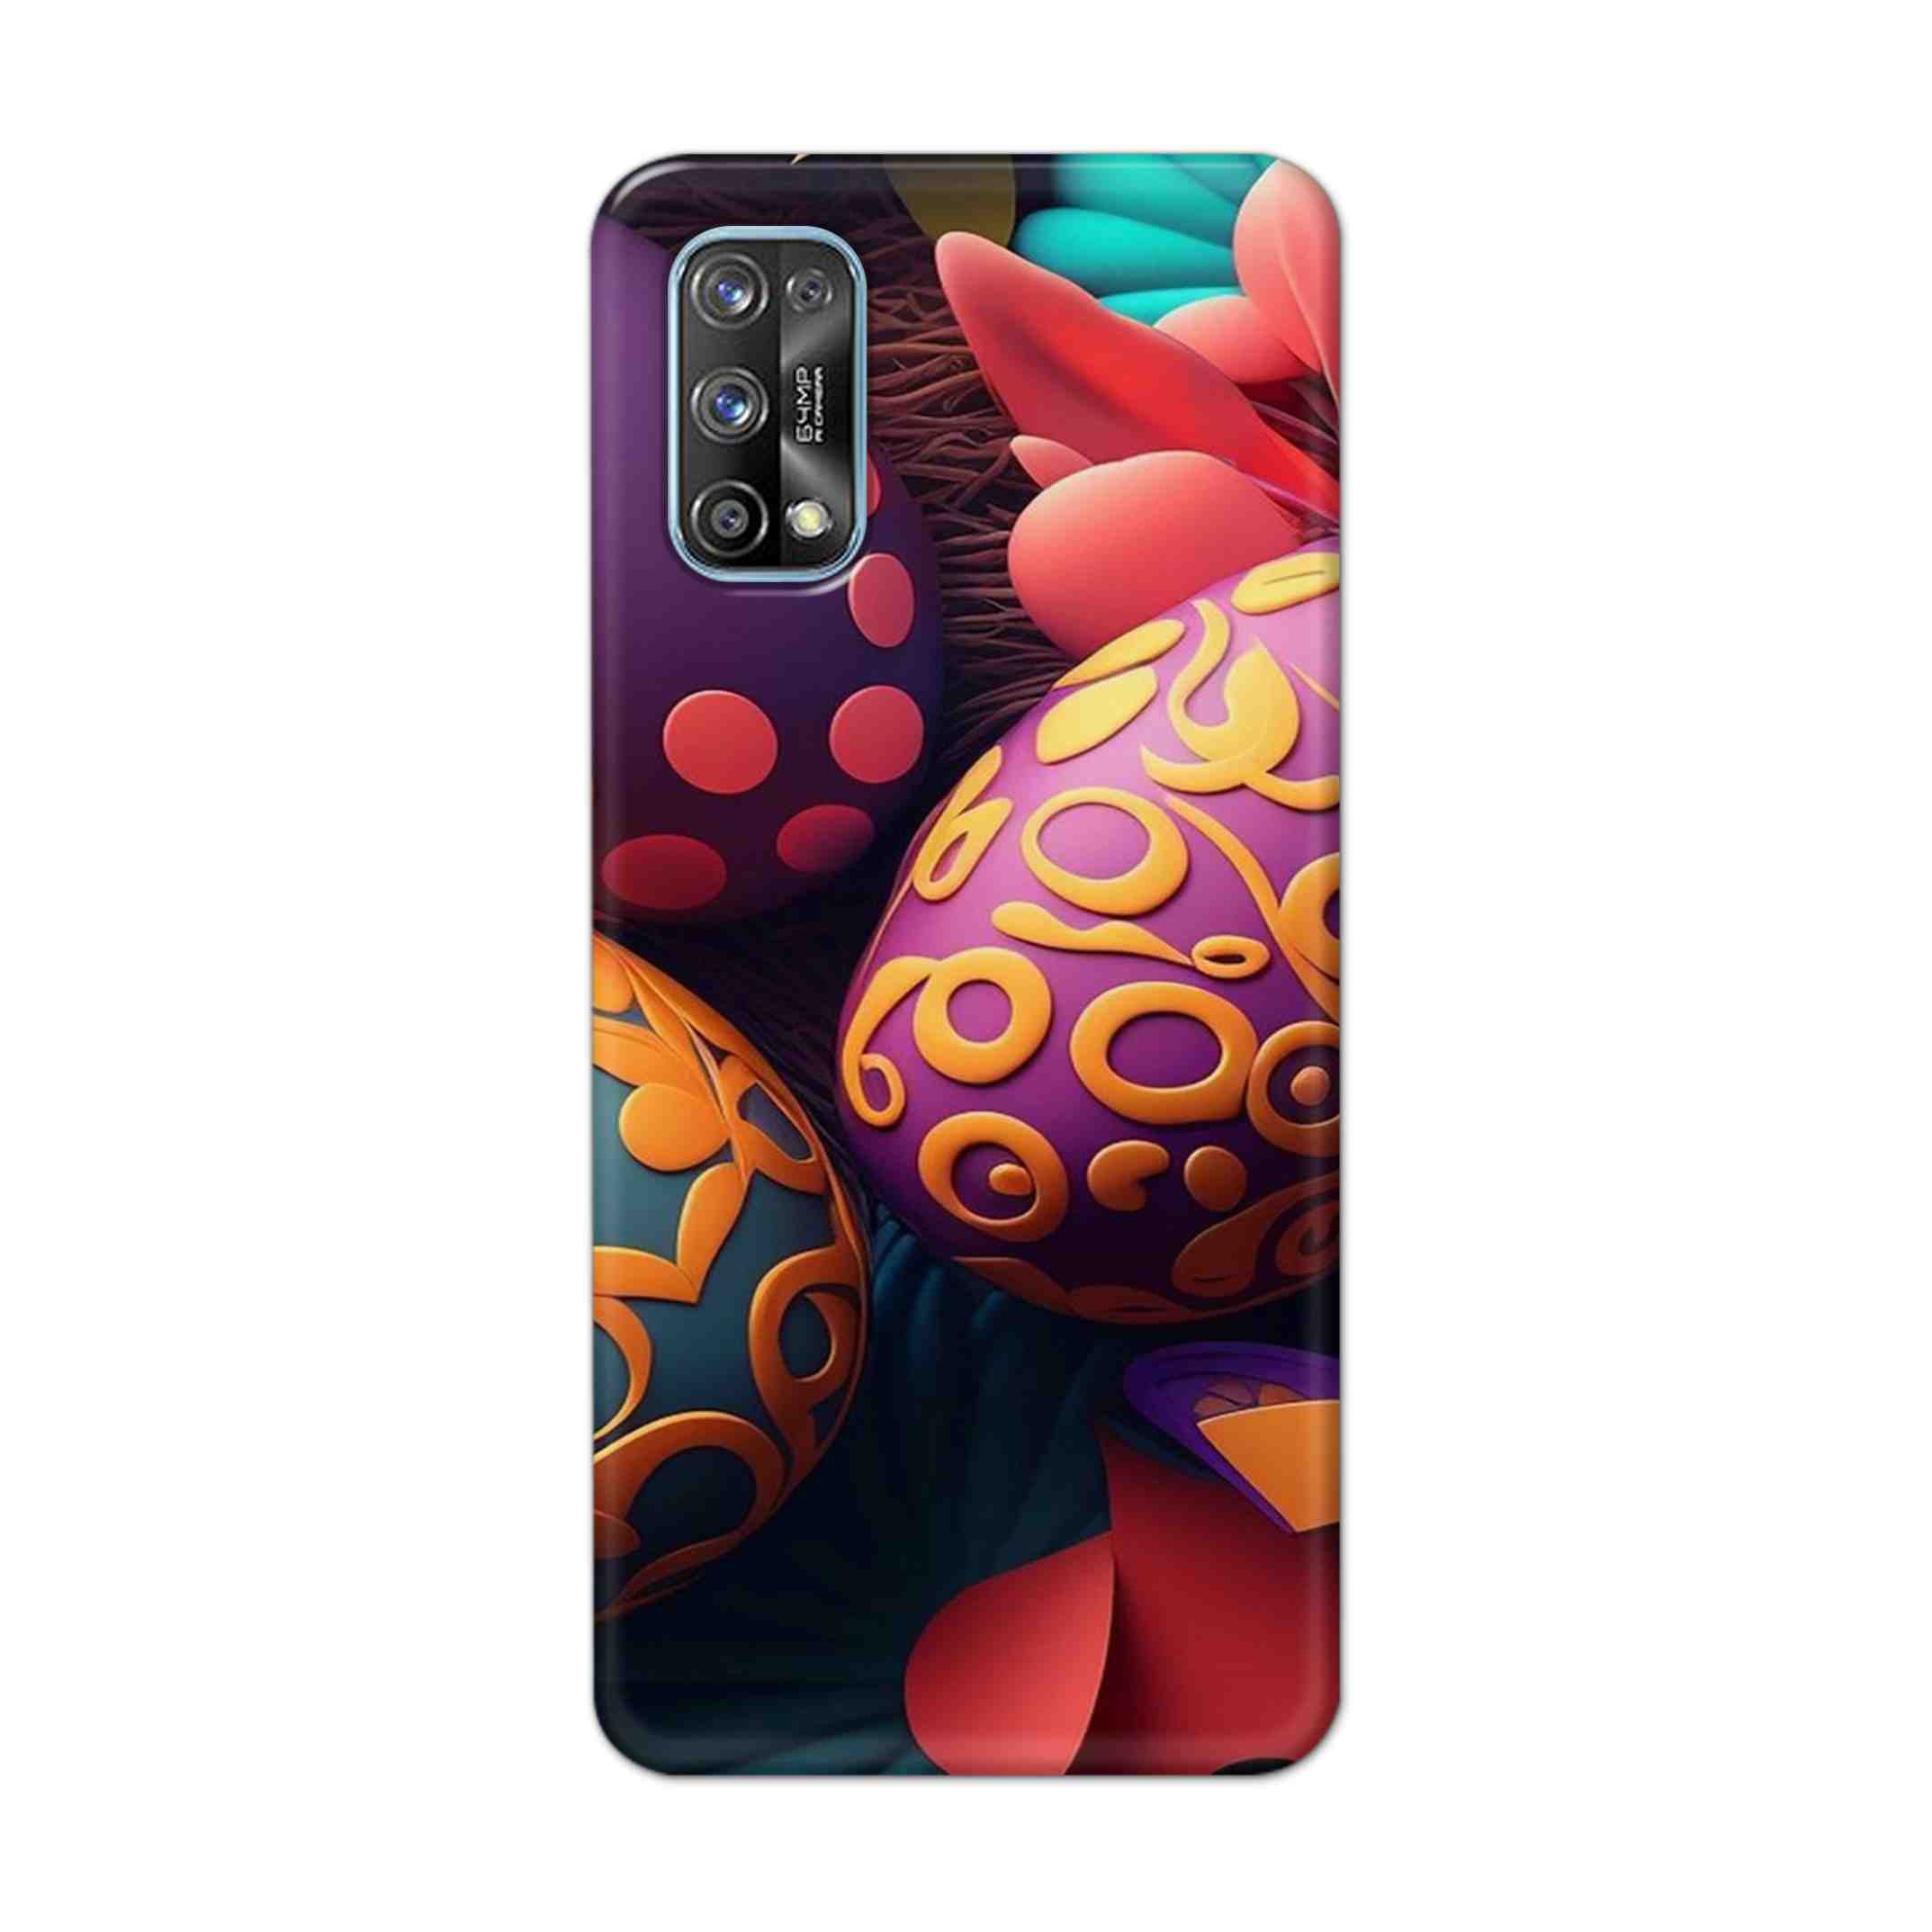 Buy Easter Egg Hard Back Mobile Phone Case Cover For Realme 7 Pro Online